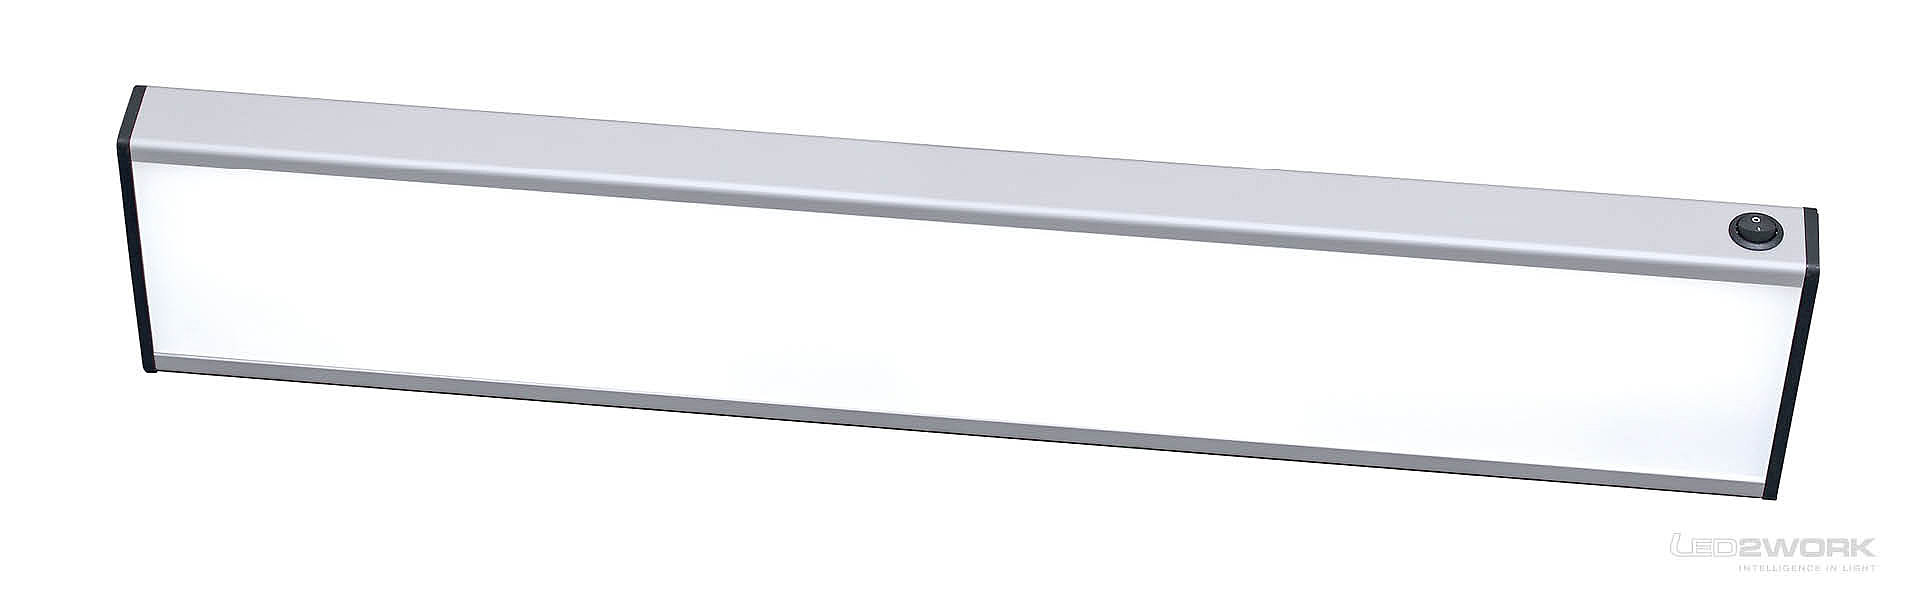 Illustrazione dell'apparecchio LED da appoggio | apparecchio LED di sistema SYSTEMLED di LED2WORK